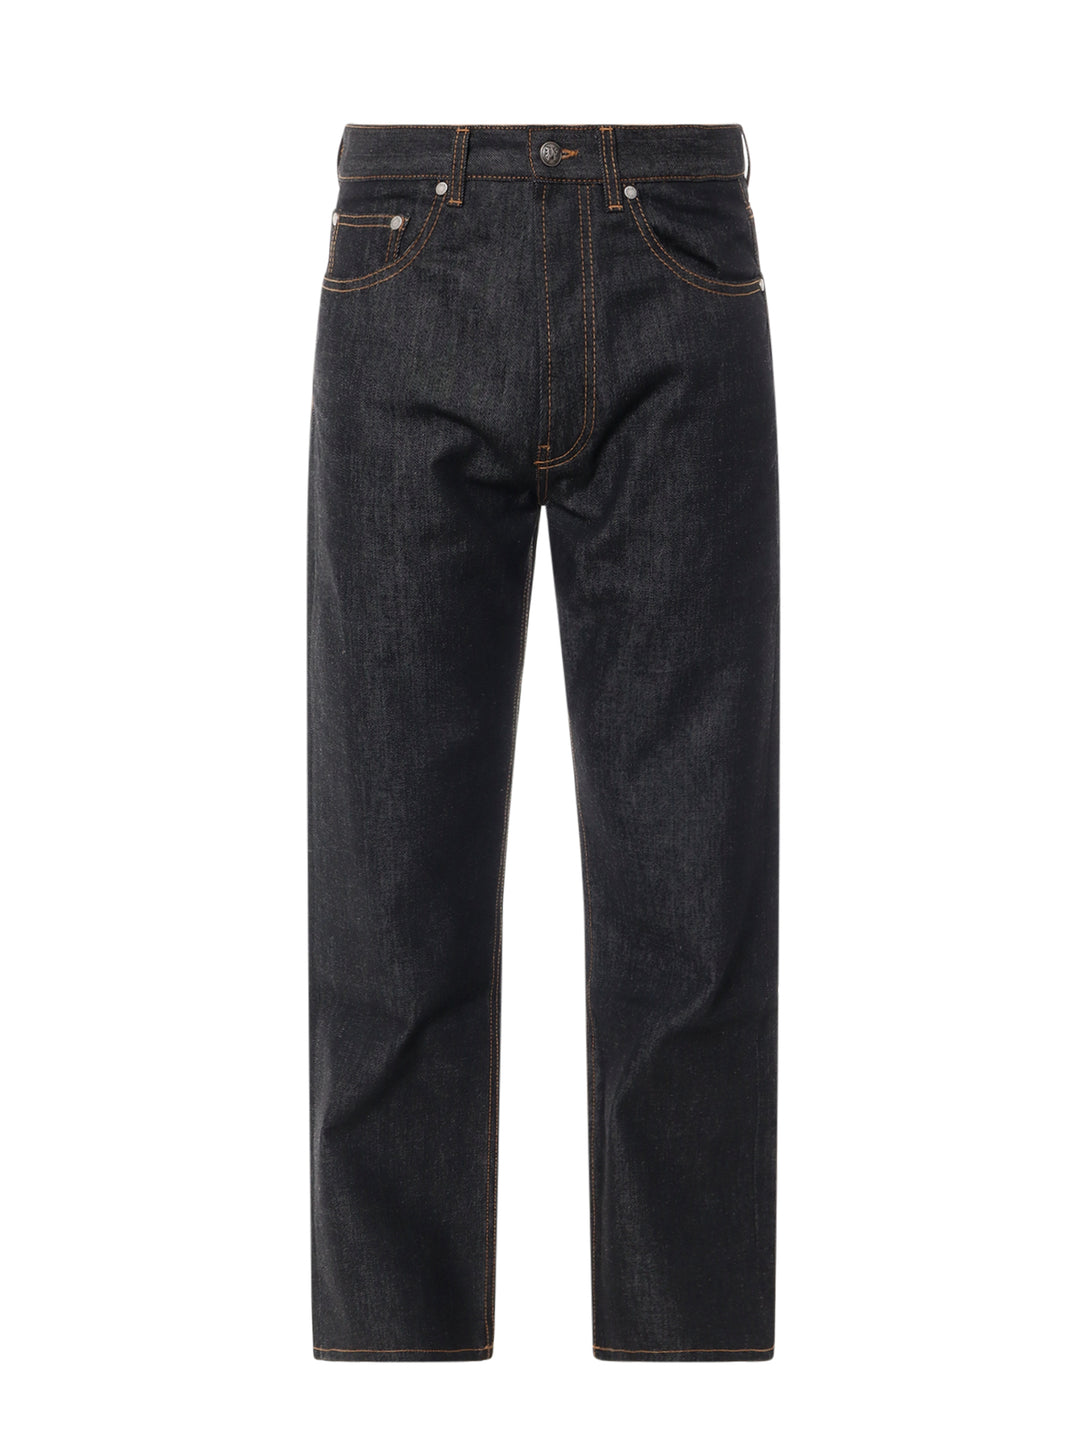 Jeans in cotone con monogramma in rilievo posteriore